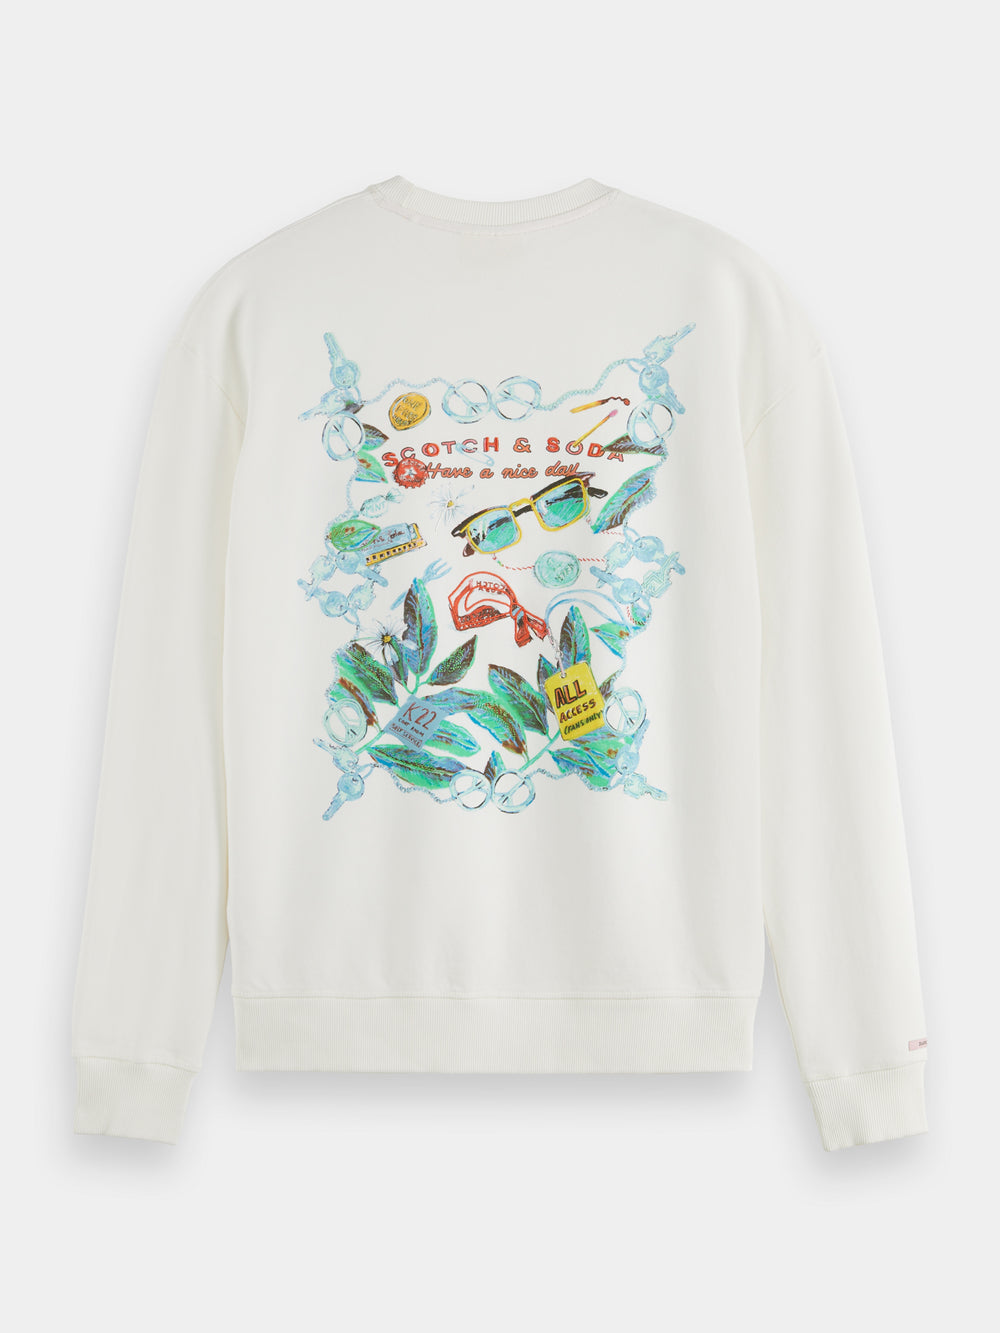 Relaxed-fit artwork sweatshirt - Scotch & Soda AU